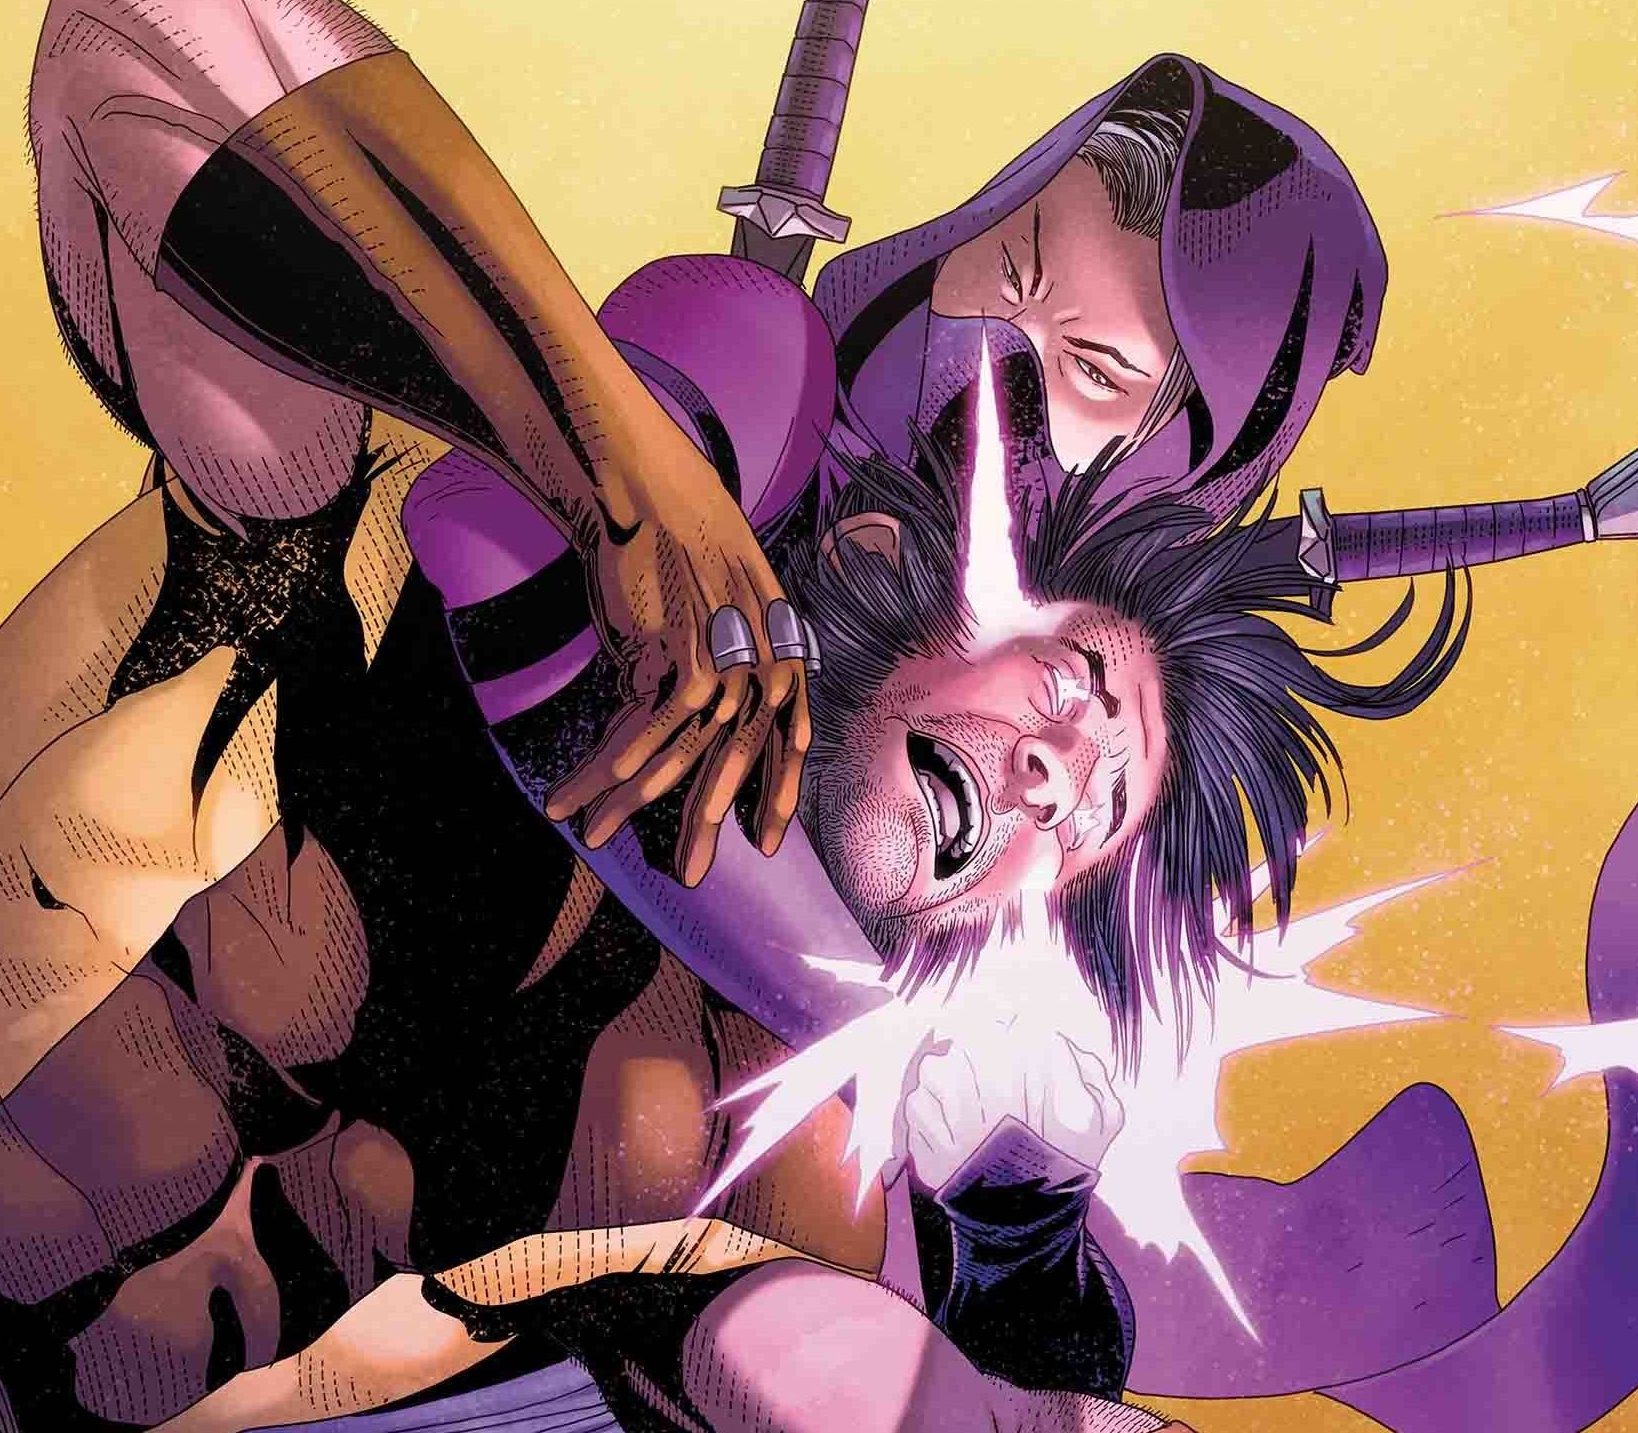 EXCLUSIVE Marvel Preview: Uncanny X-Men #16